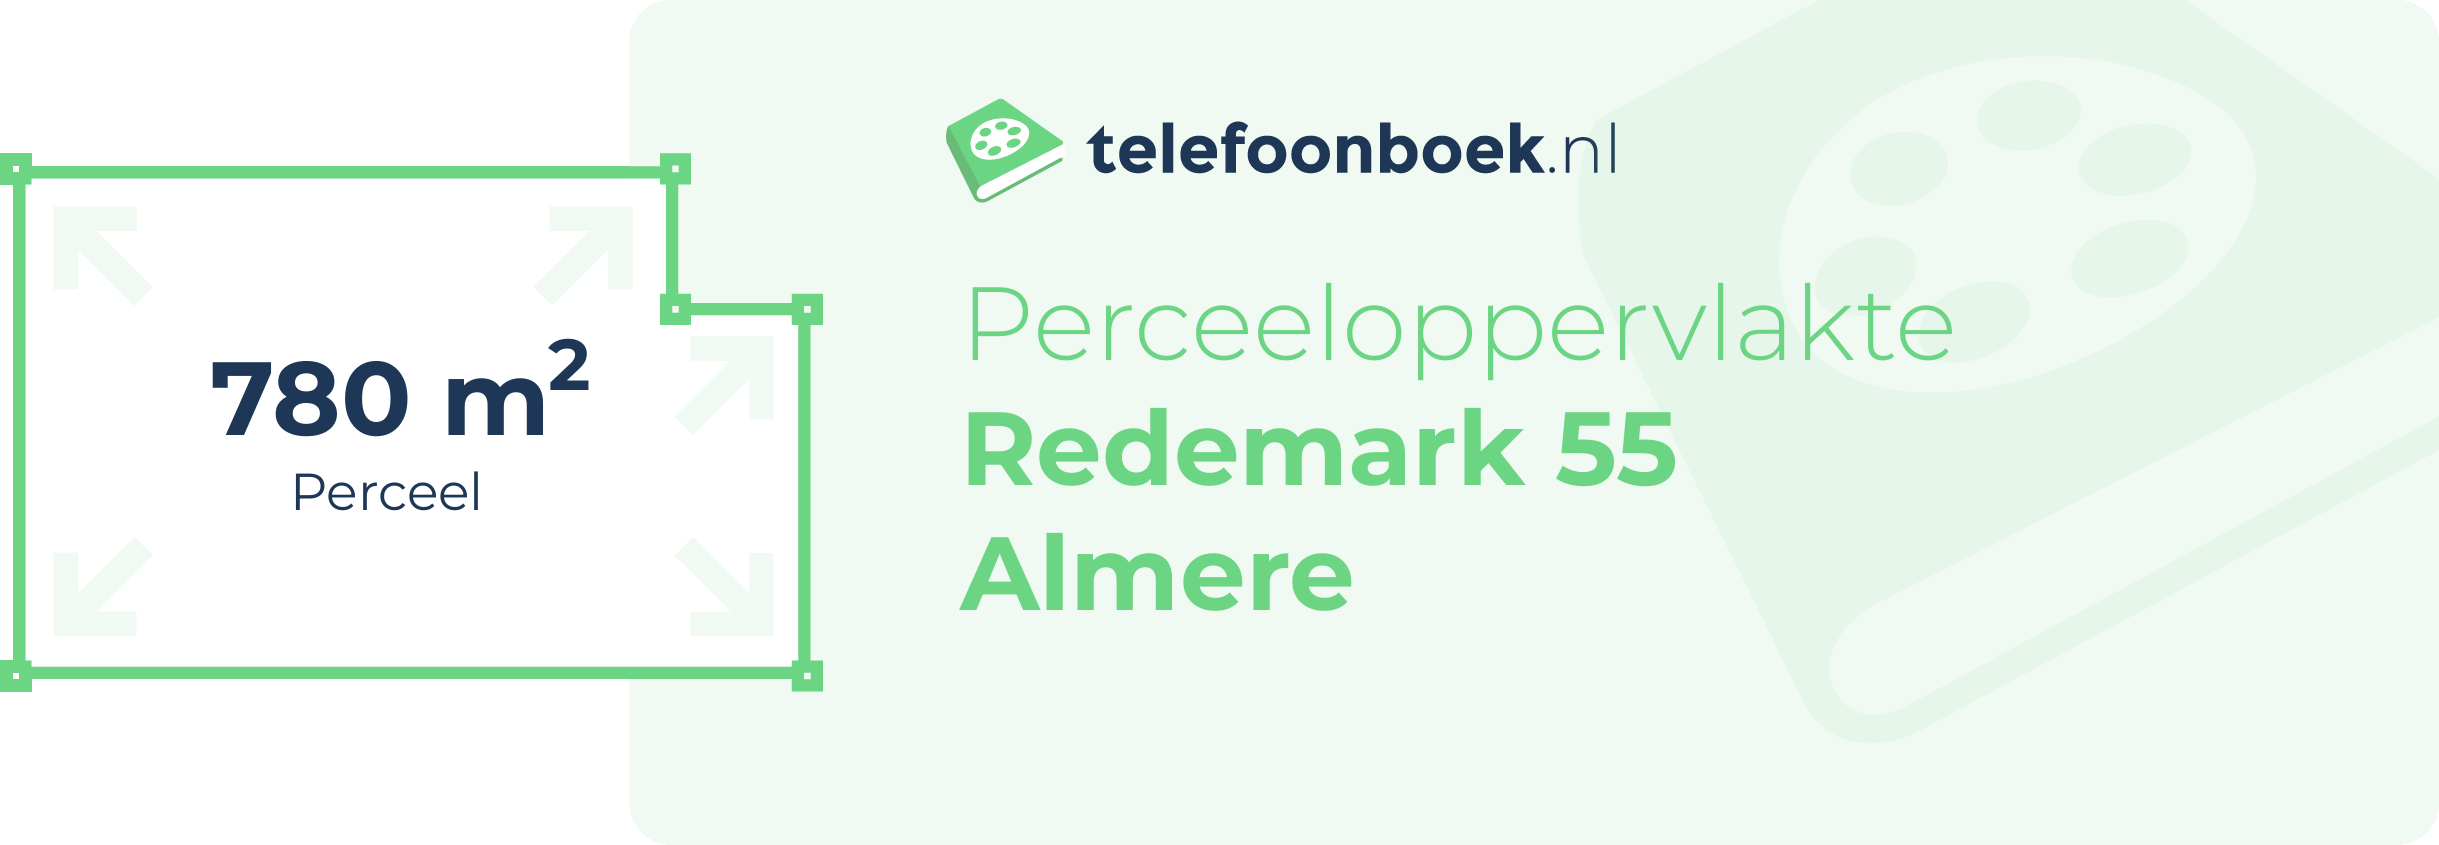 Perceeloppervlakte Redemark 55 Almere